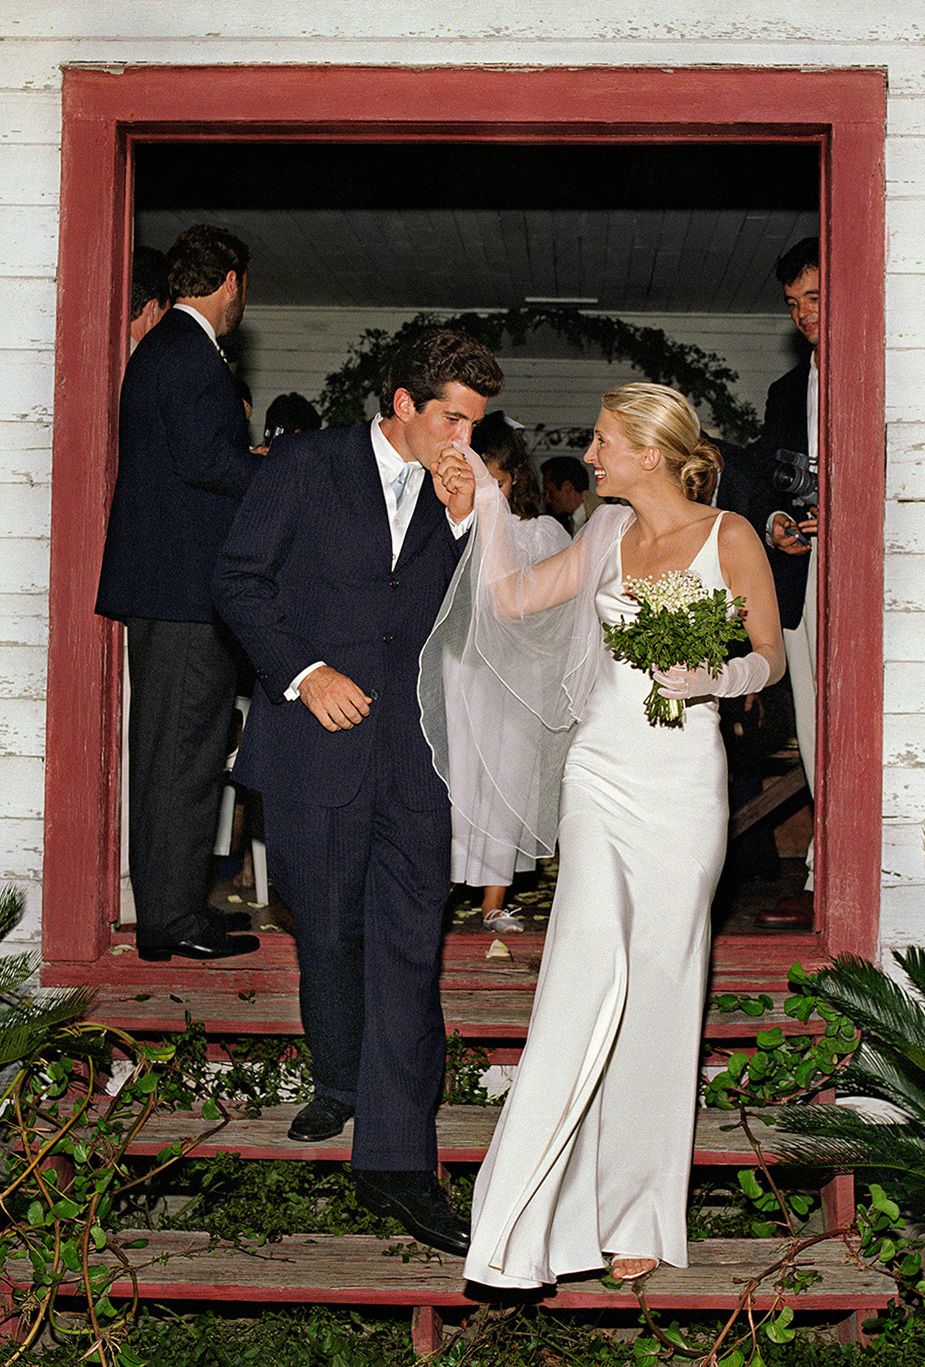 1996 - Carolyn Bessette & John F. Kennedy, Jr. ~ Yard Sale Weddings